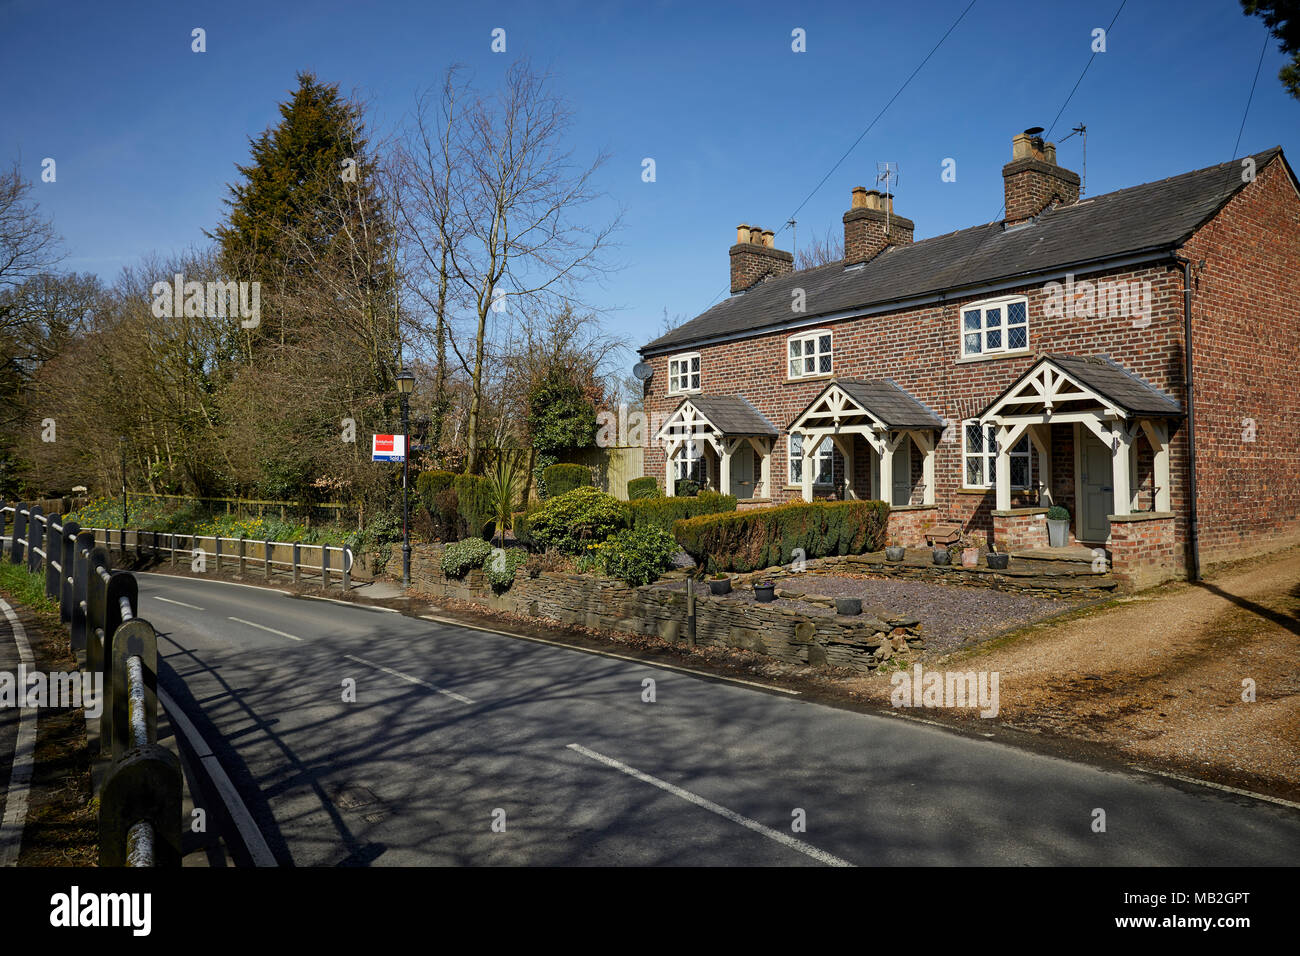 Construit en brique rouge assez Mobberley village cottages avec terrasse Banque D'Images